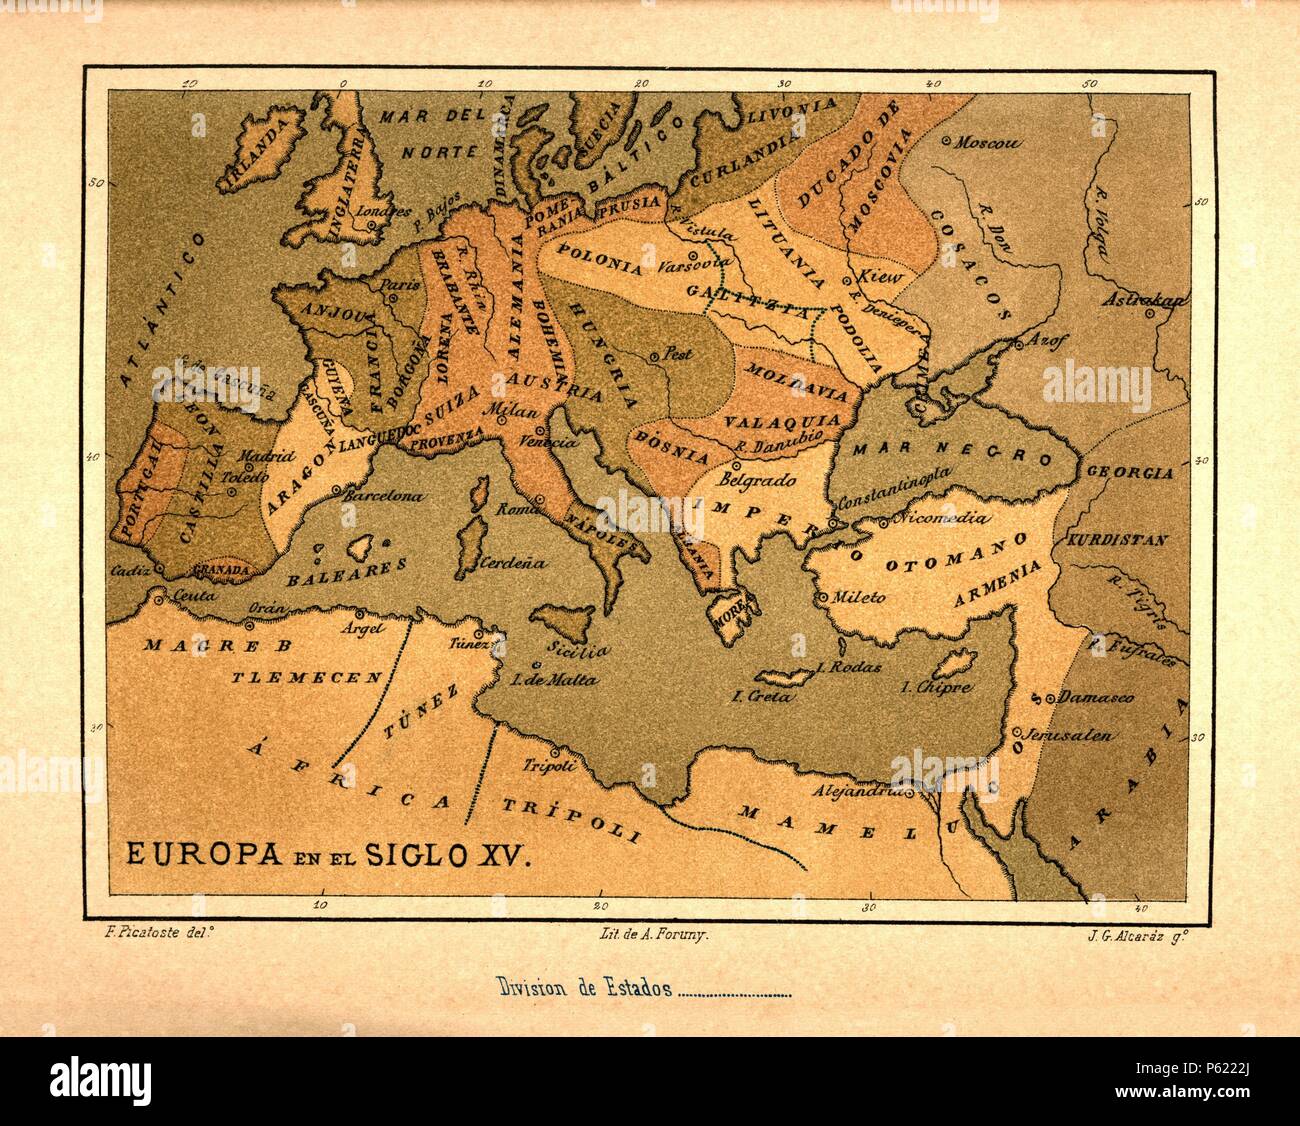 Mapa de Europa en el siglo XV publicado en el libro Historia Universal, de Felipe Picatoste. Madrid, 1890. Stock Photo